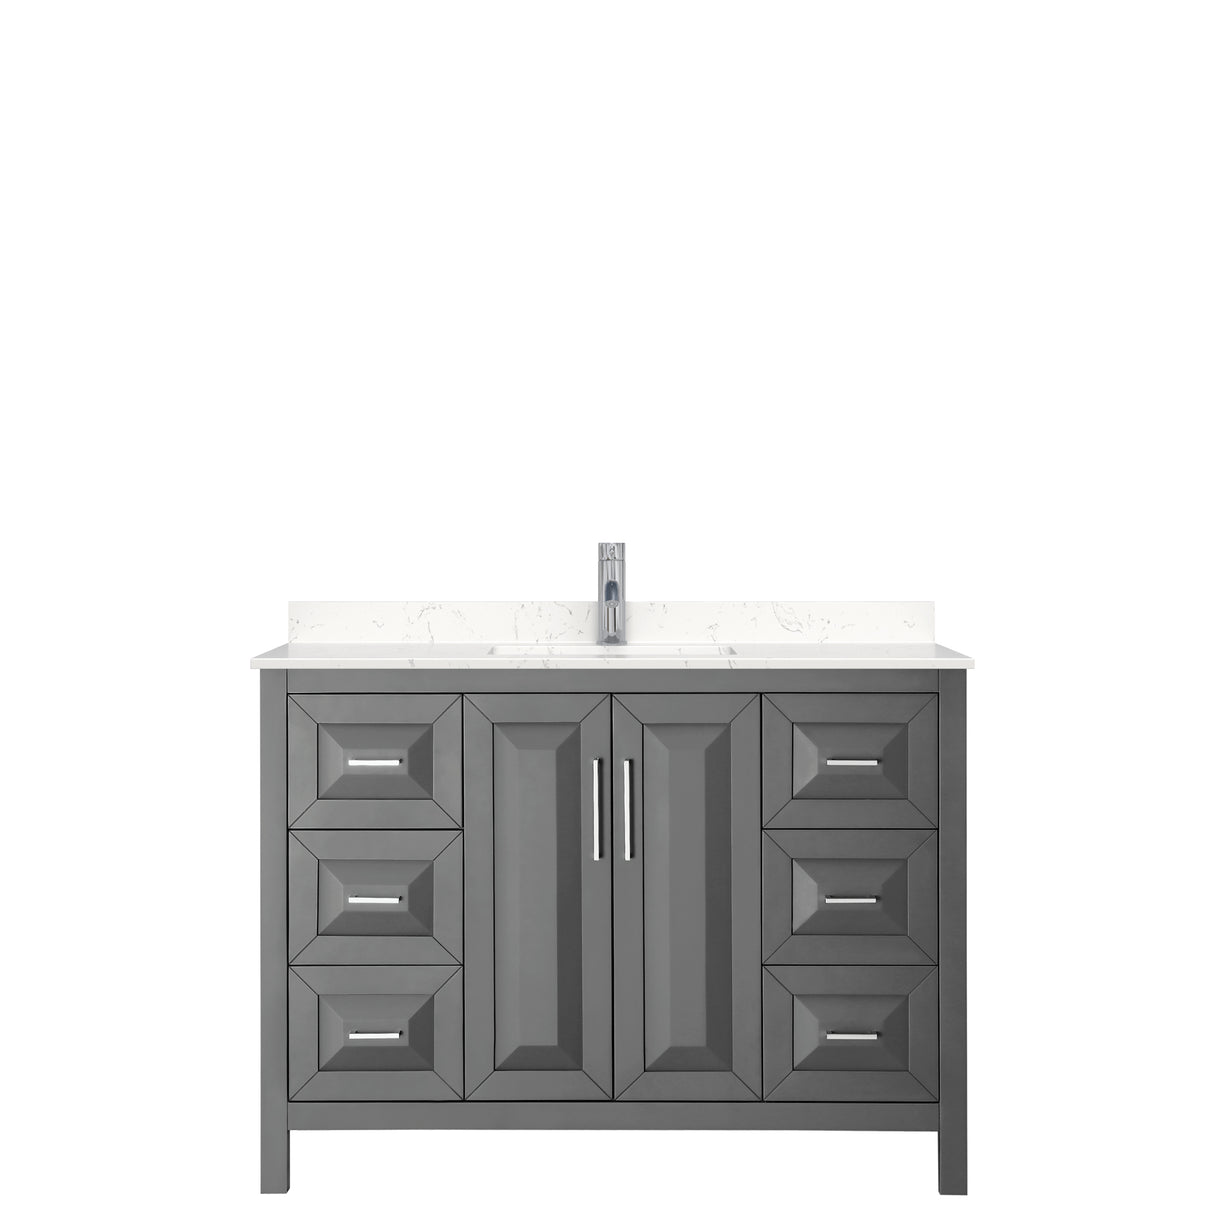 Daria 48 Inch Single Bathroom Vanity in Dark Gray Carrara Cultured Marble Countertop Undermount Square Sink No Mirror